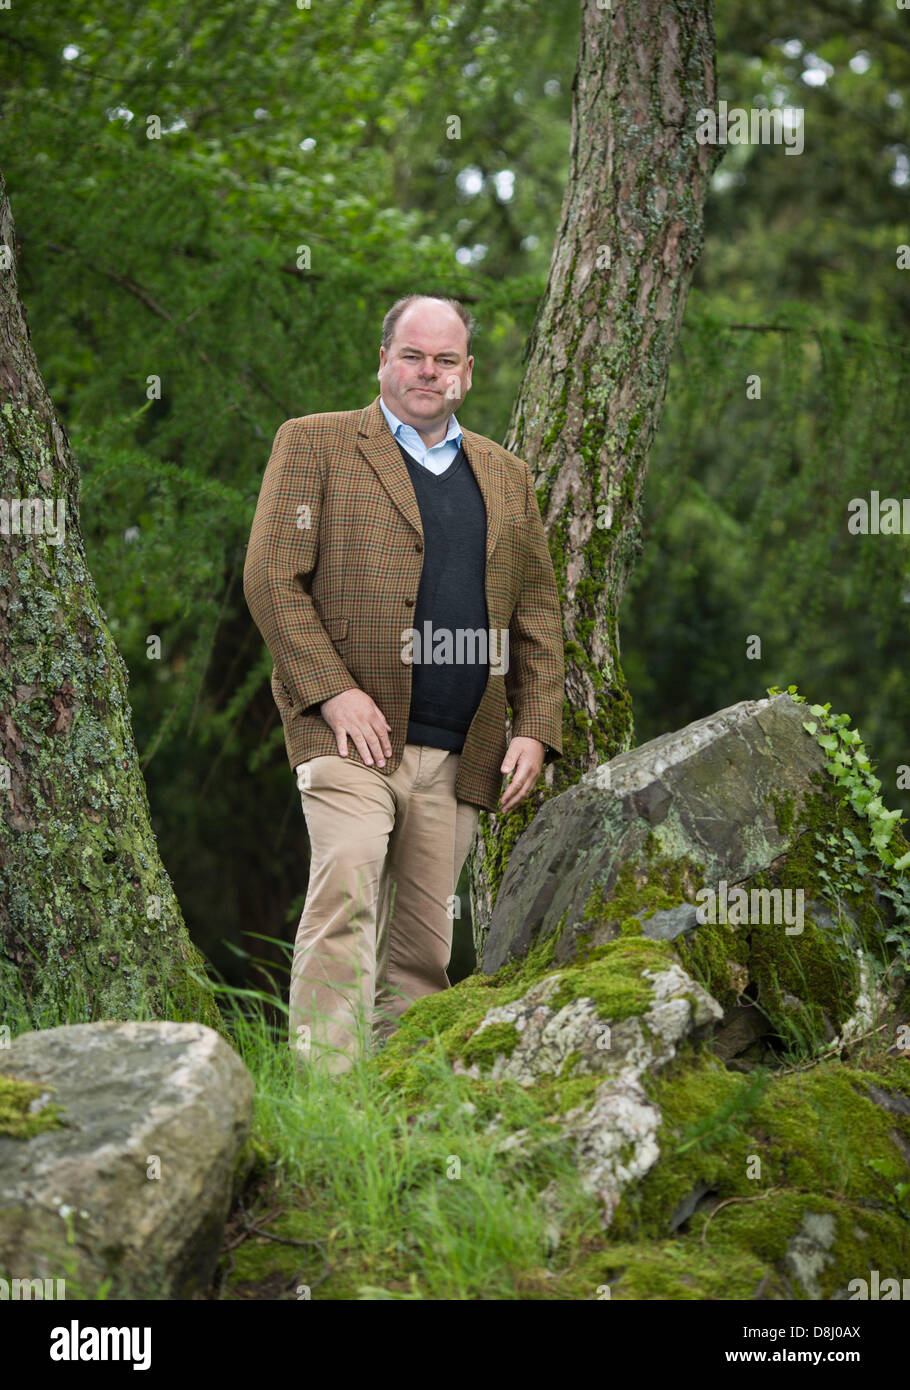 Walter Kohl, hijo del ex canciller alemán Helmut Kohl, posa para el fotógrafo en Koenigstein, Alemania, 27 de mayo de 2013. Foto: Frank RUMPENHORST Foto de stock